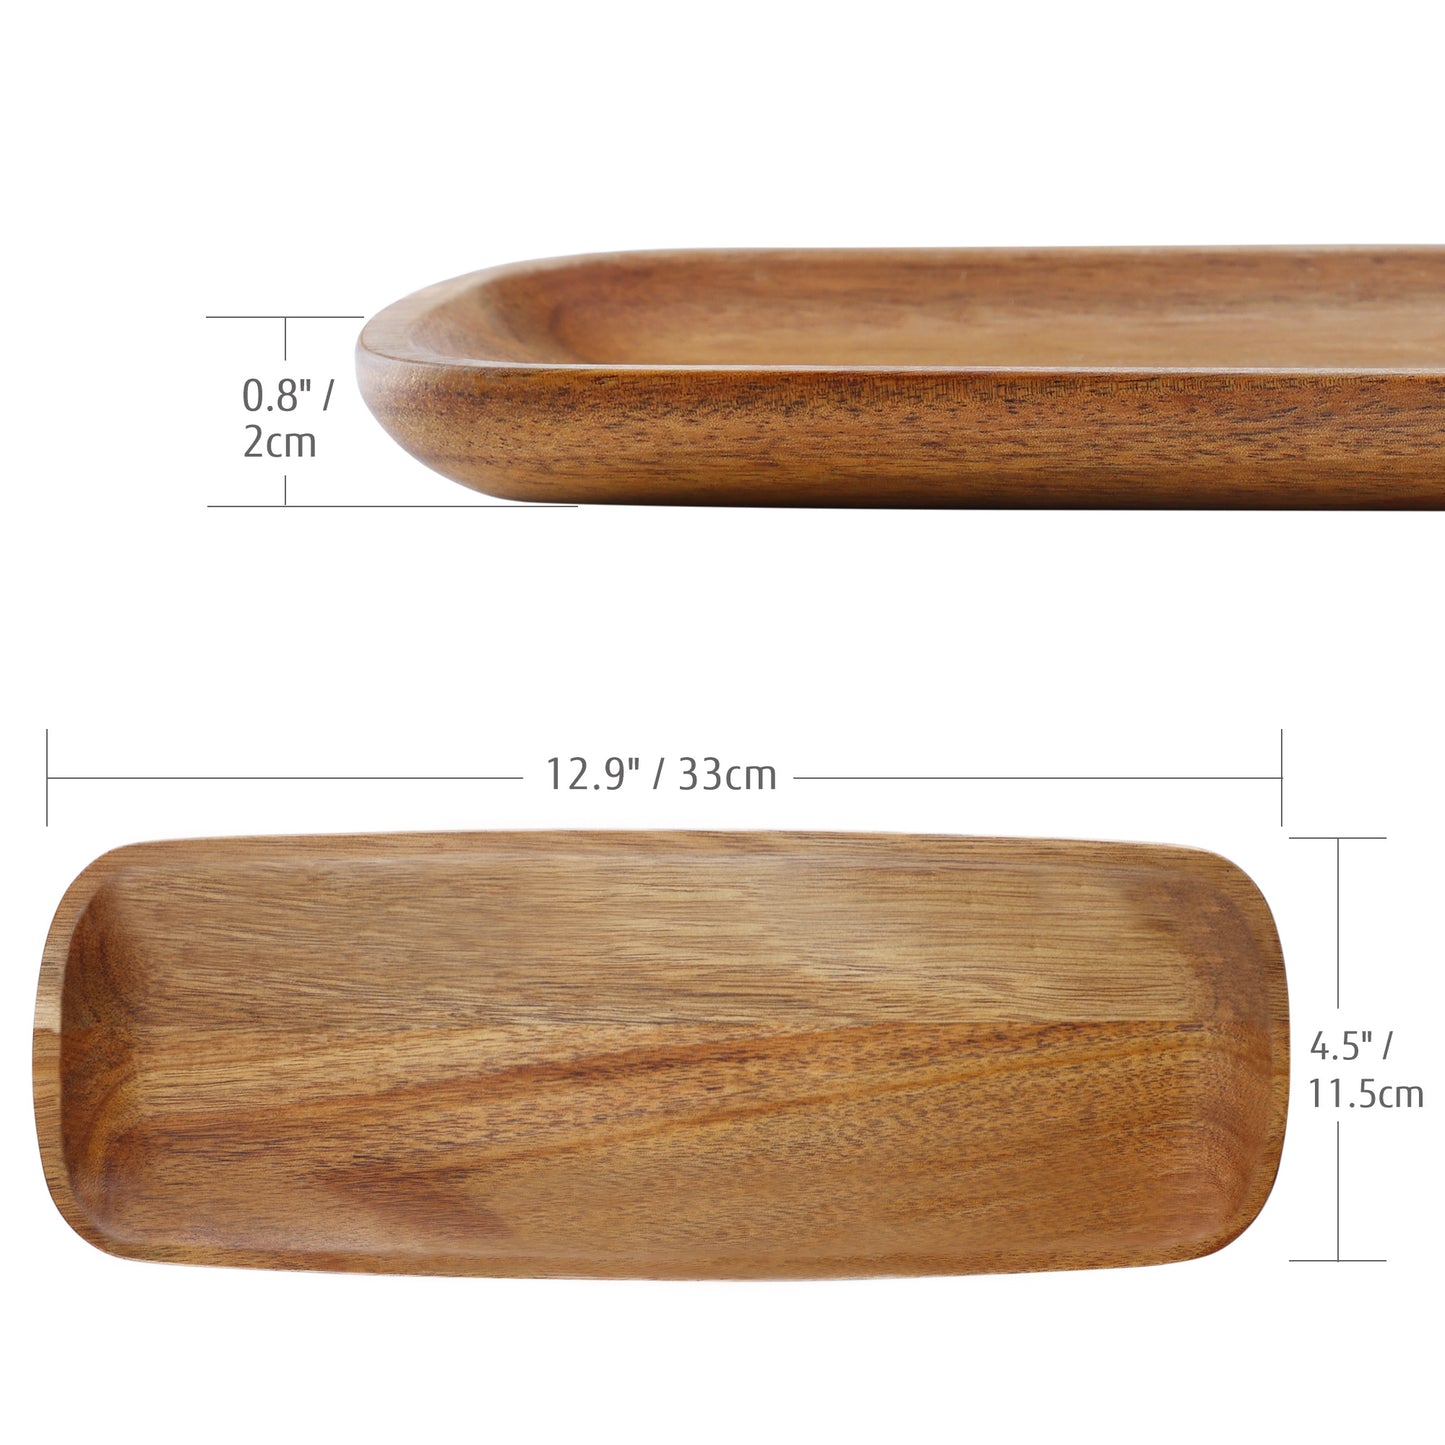 Three piece set of wooden pallets - Hecef Kitchen